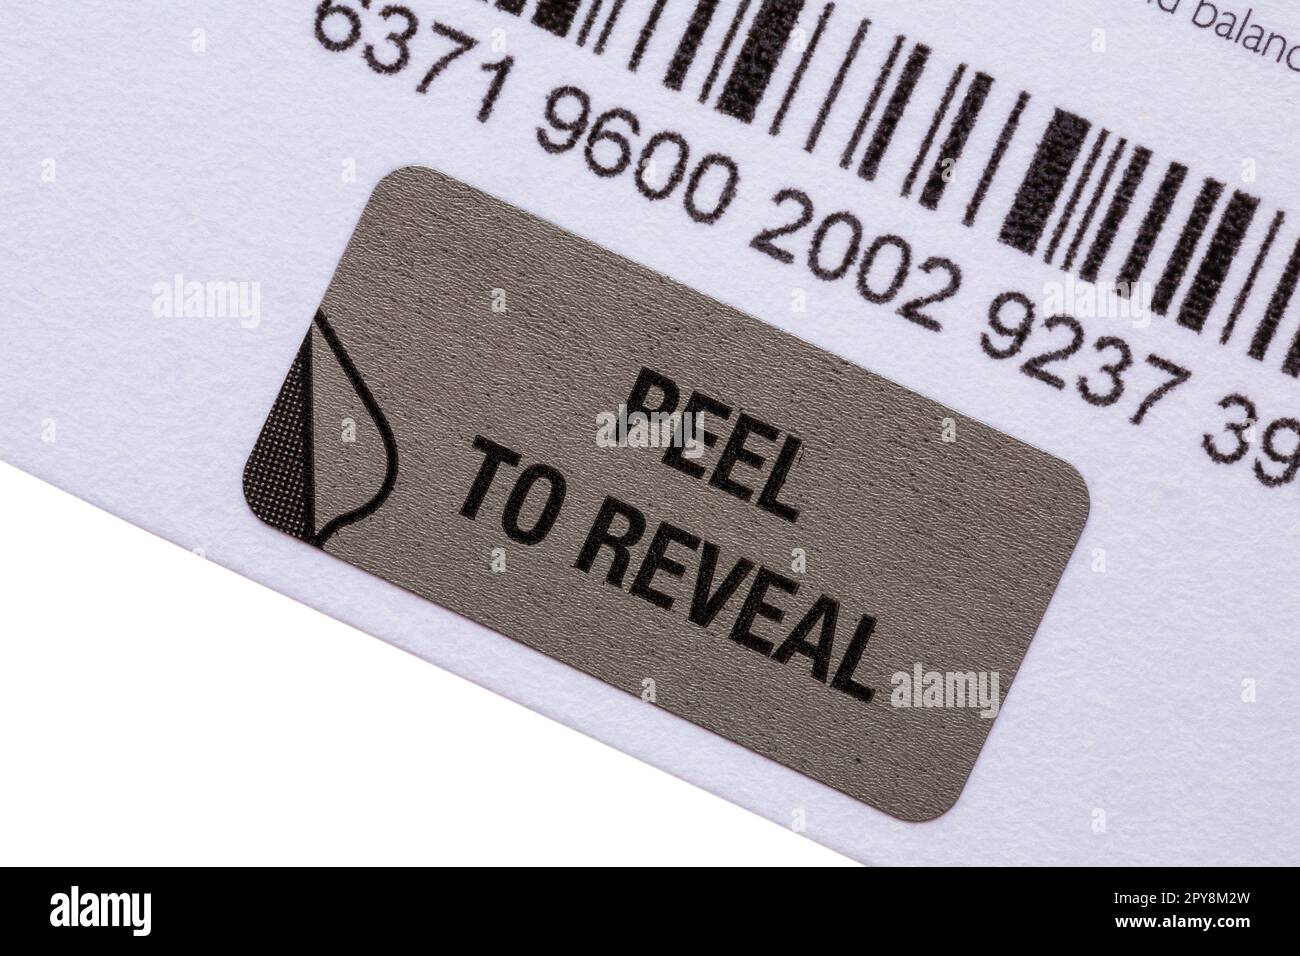 Pela para revelar la etiqueta de la tarjeta de regalo de John Lewis y Waitrose & Partners, para añadirla a la cartera móvil, pela la la etiqueta de seguridad y escanea el código QR Foto de stock